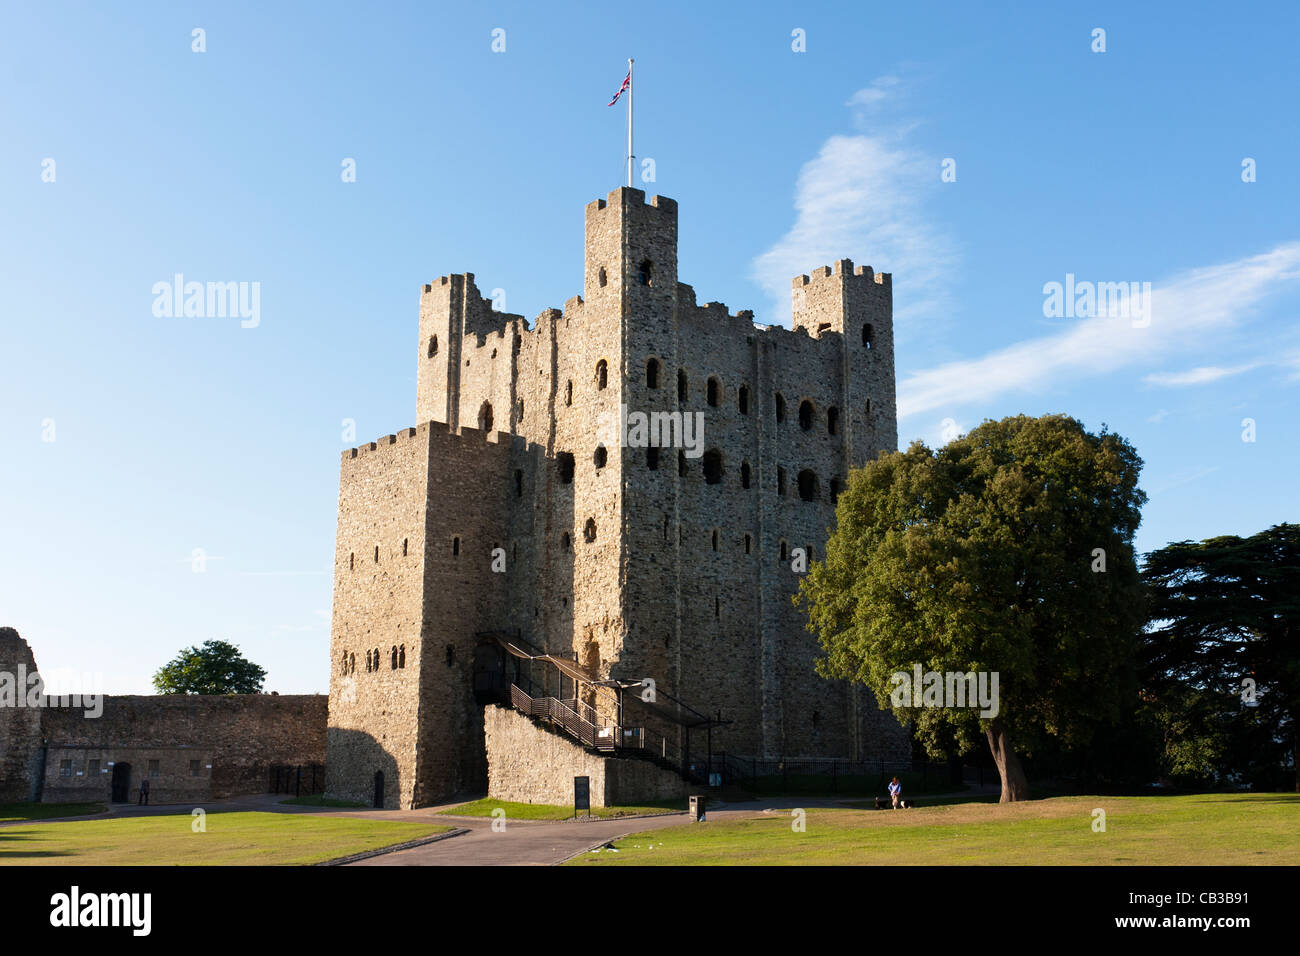 La torre normanna, costruita nel 1127, del castello di Rochester in una mattinata estiva sotto un cielo blu. 113 metri di altezza, sorvegliò la strada e il fiume Medway che attraversa. Foto Stock